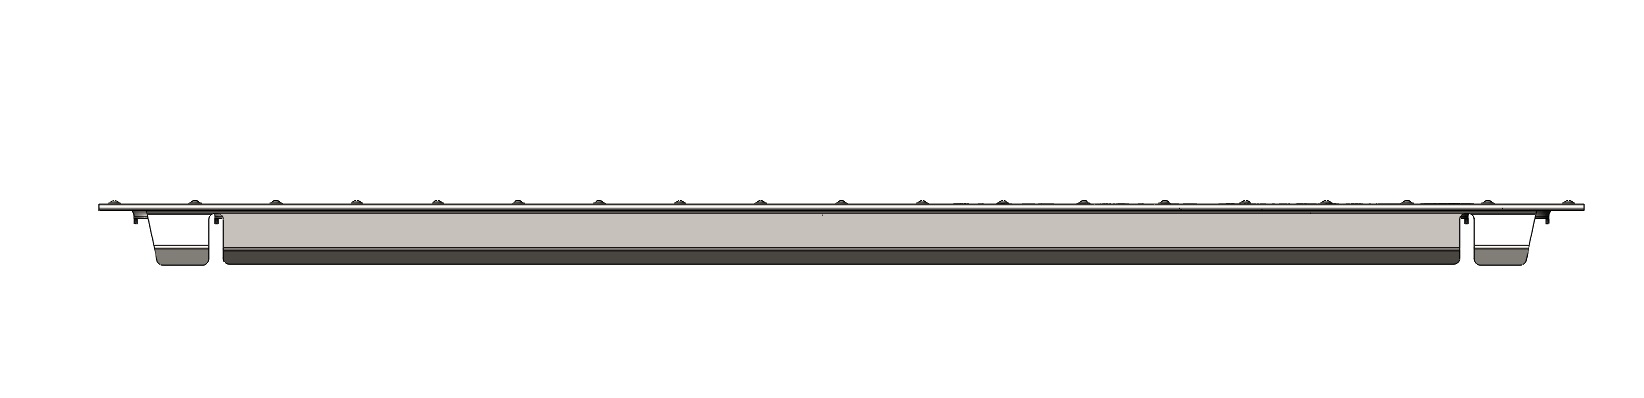 Решетка водоприемная Gidrolica Standart РВ-10.13,6.50-штамп. стальная оцинк., кл. А15 (500) 3